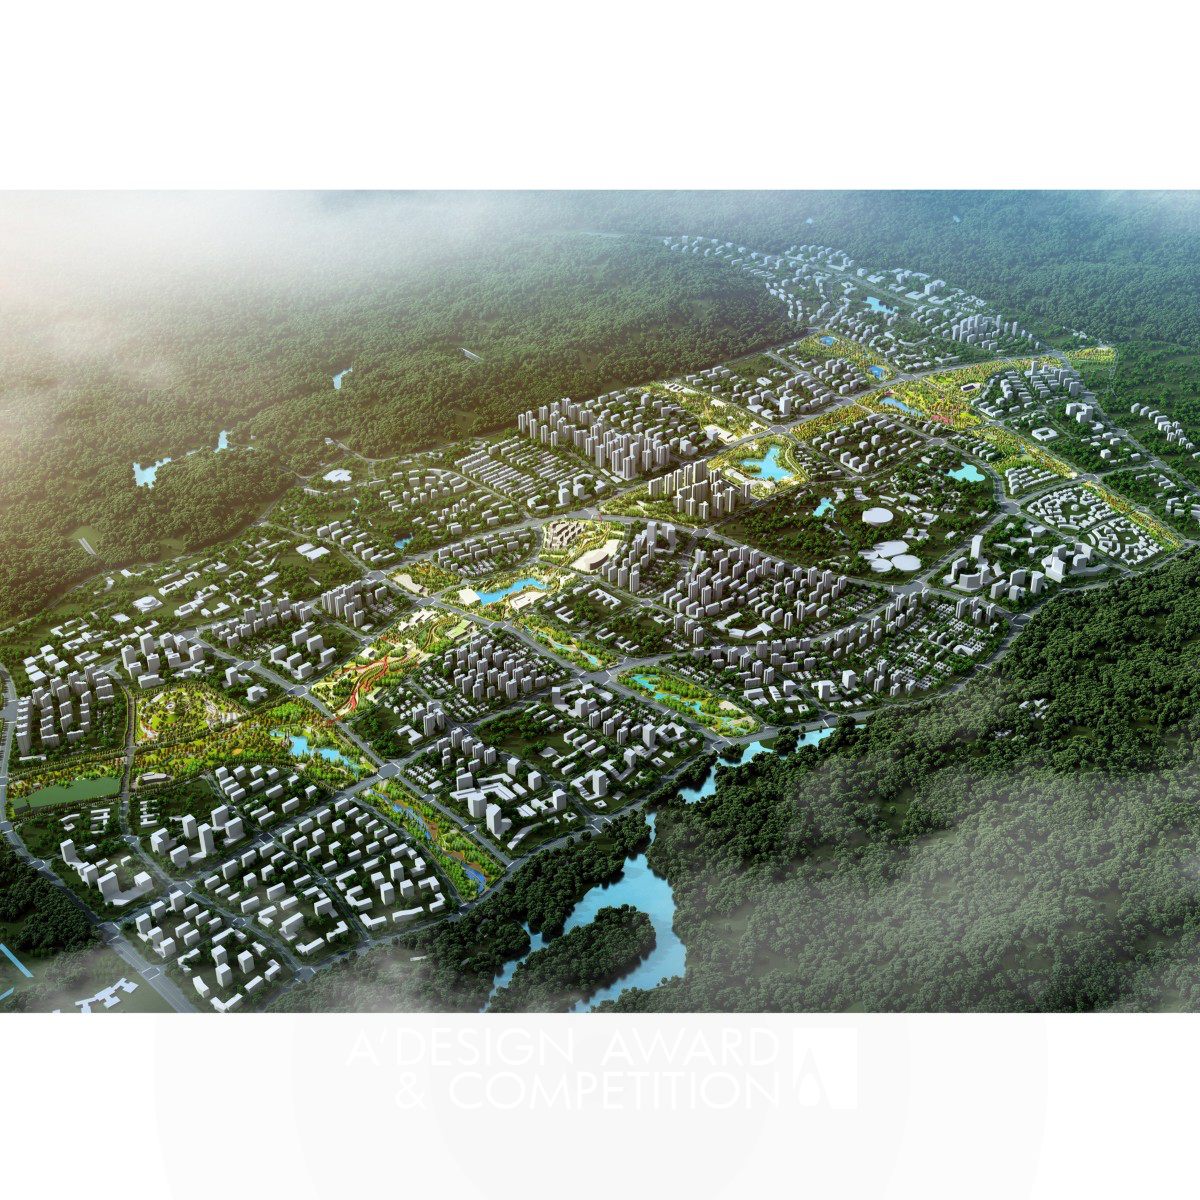 태평 신도시의 시적인 에메랄드 코리도어: 자연과 함께하는 도시의 새로운 모델